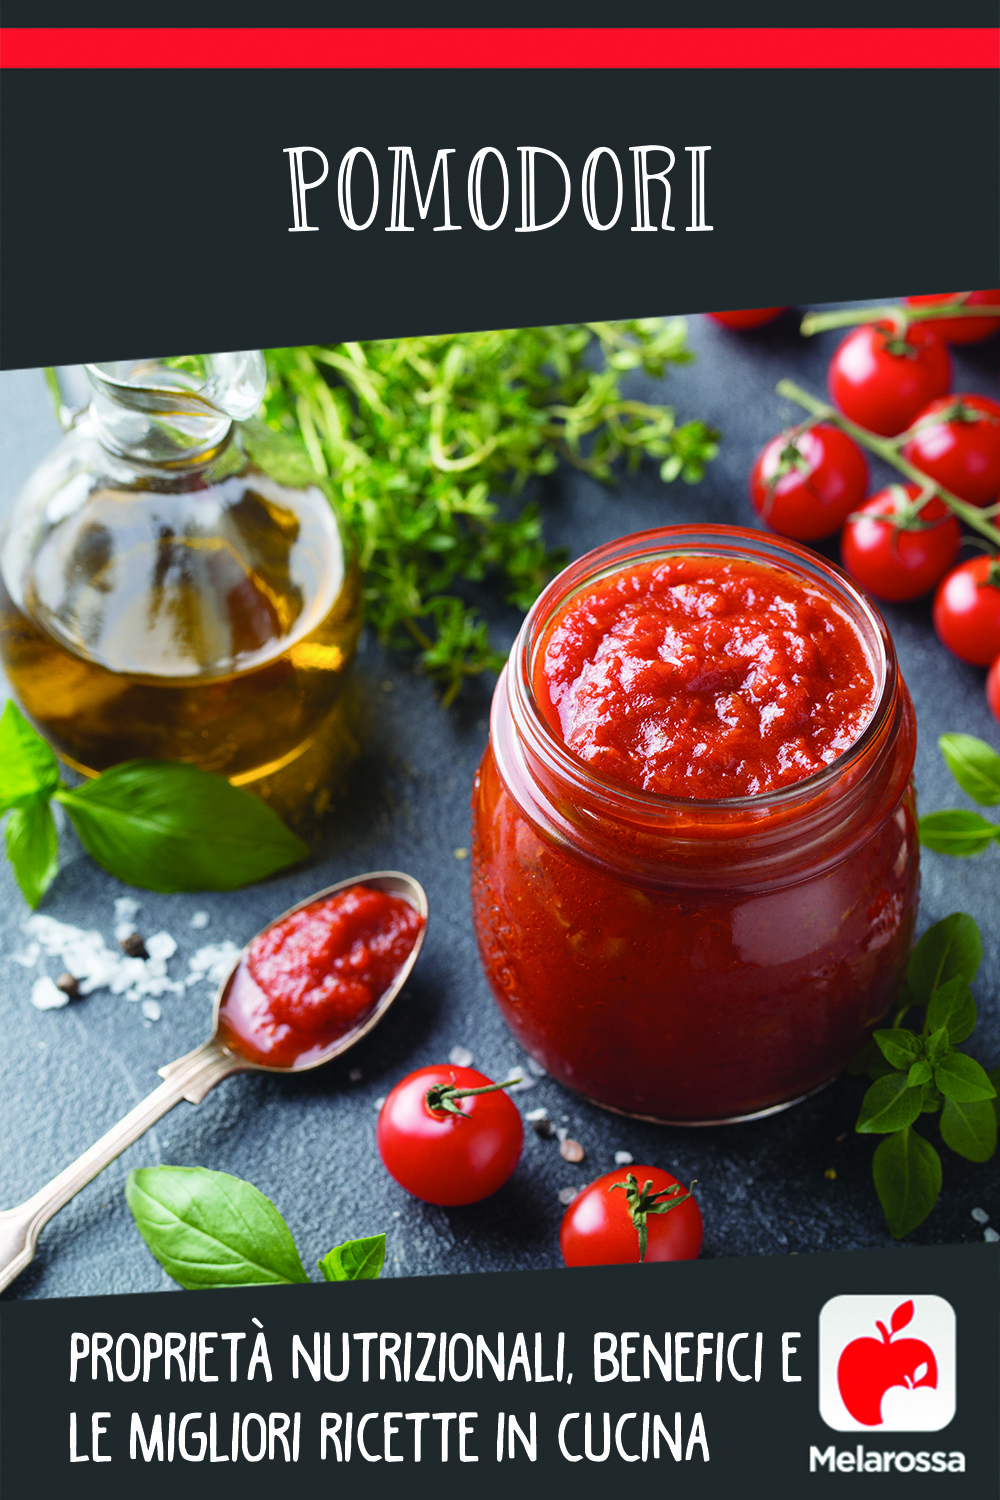 tomates: que son, beneficios y recetas